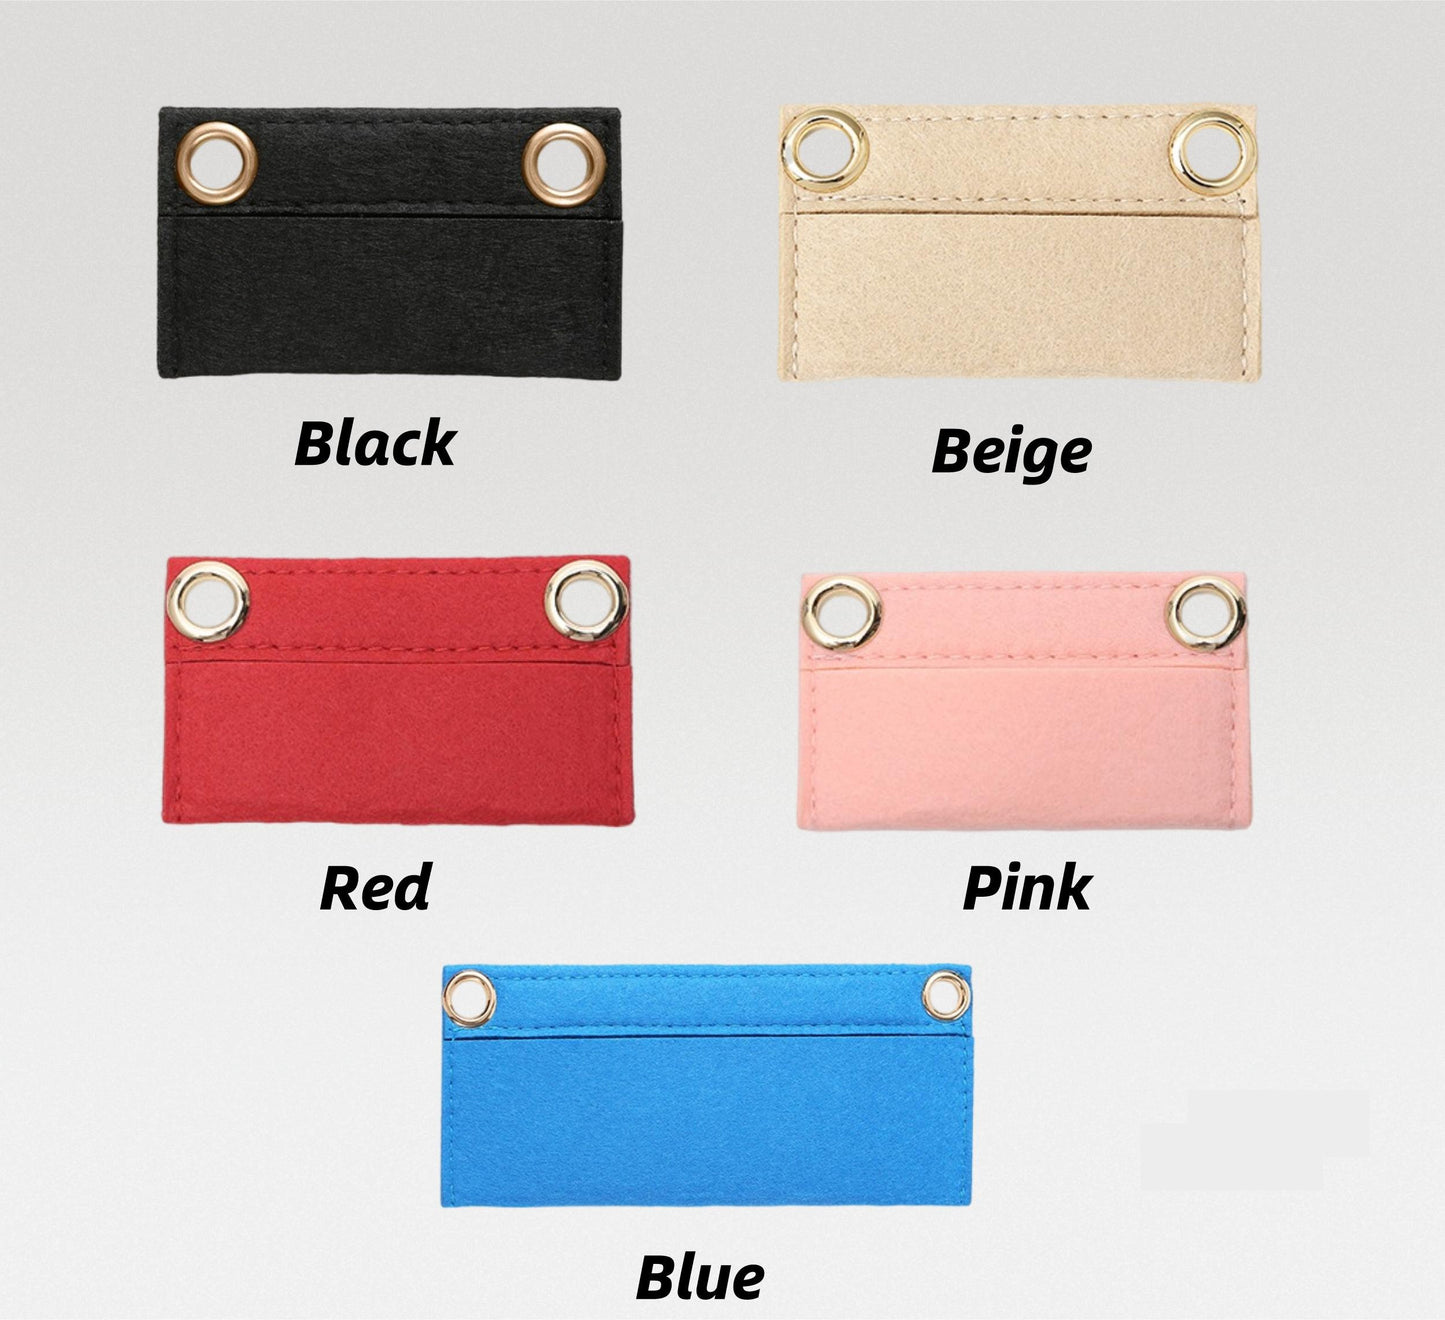 Belle De Jour Clutch Conversion Kit Felt Insert Chain | Strap Chain | Marmont Bag Strap | Chain Leather Strap